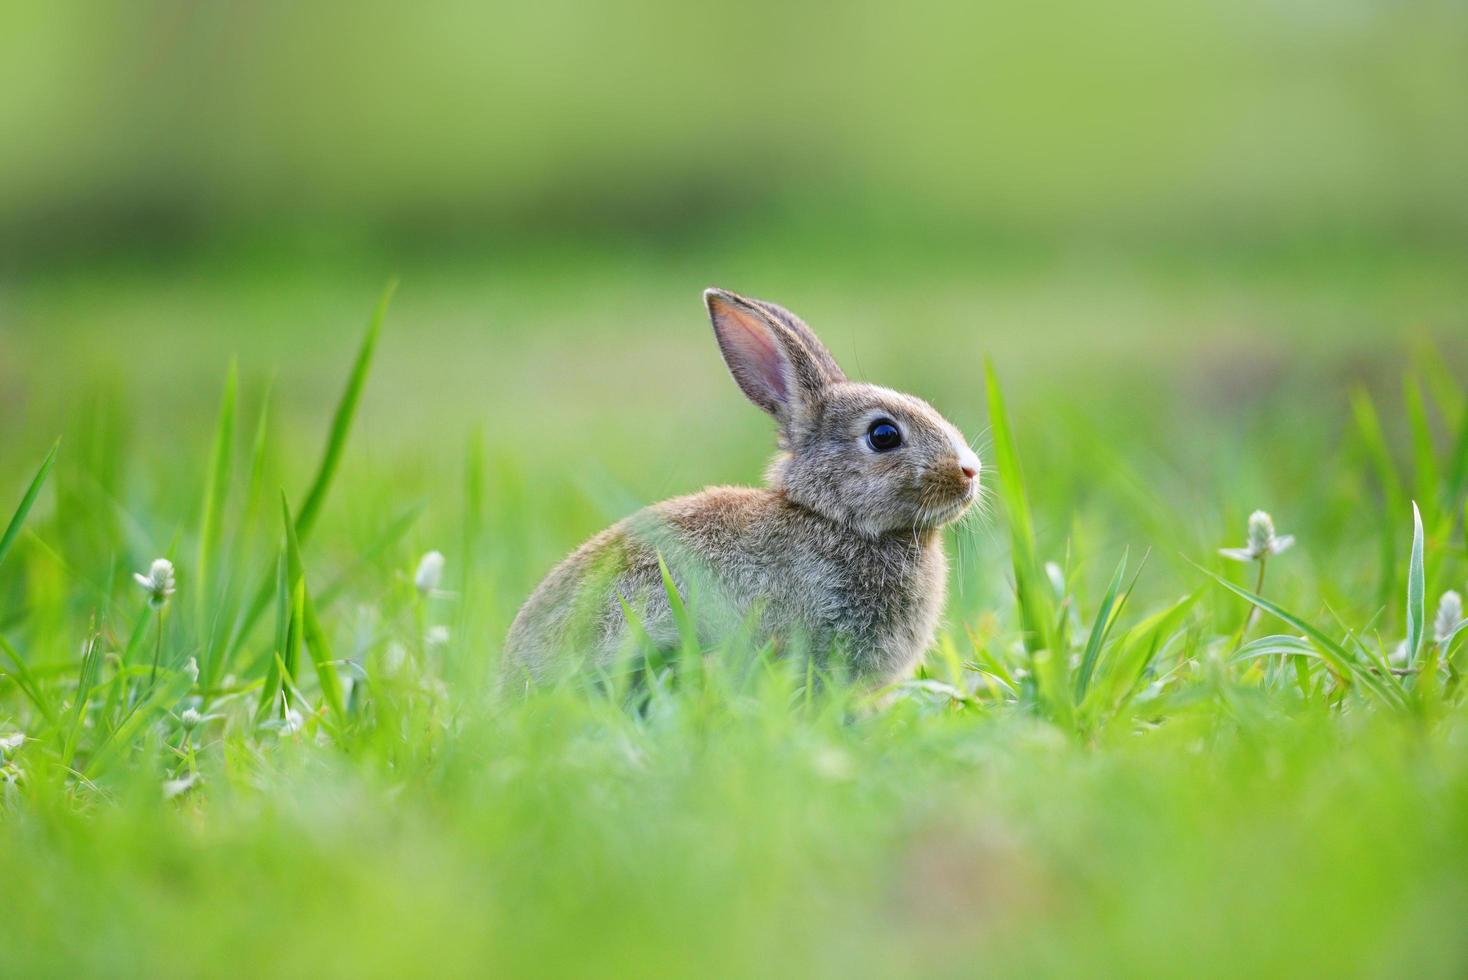 påskhare med brun kanin på äng och vårgrönt gräs bakgrund utomhus dekorerad för festival påskdag - kanin söt på naturen foto